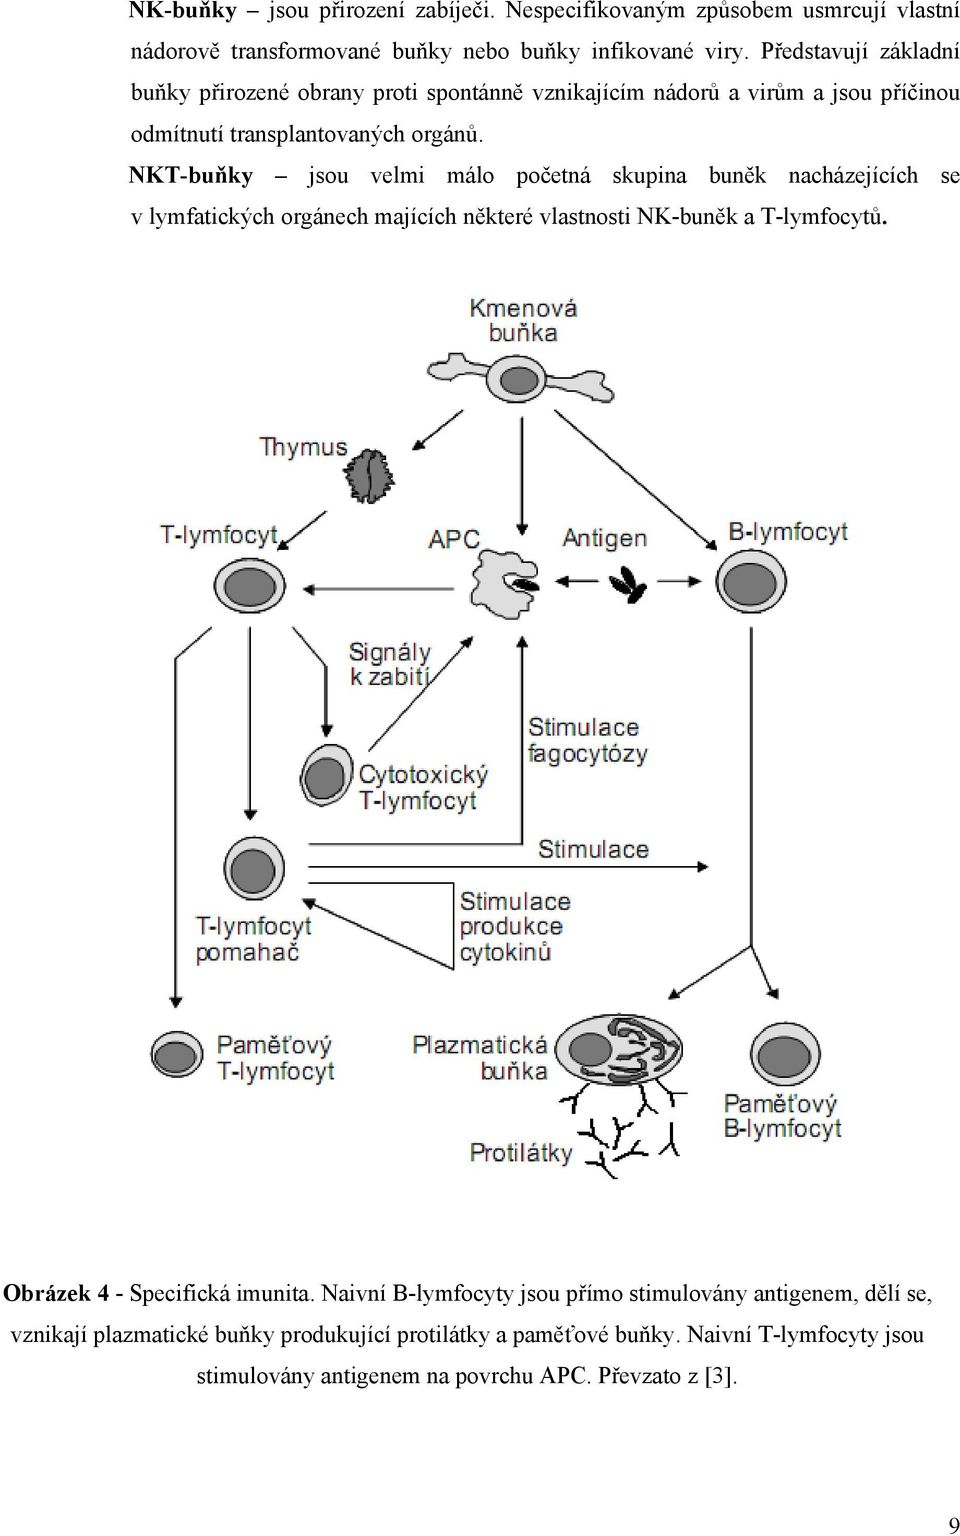 NKT-buňky jsou velmi málo početná skupina buněk nacházejících se v lymfatických orgánech majících některé vlastnosti NK-buněk a T-lymfocytů.